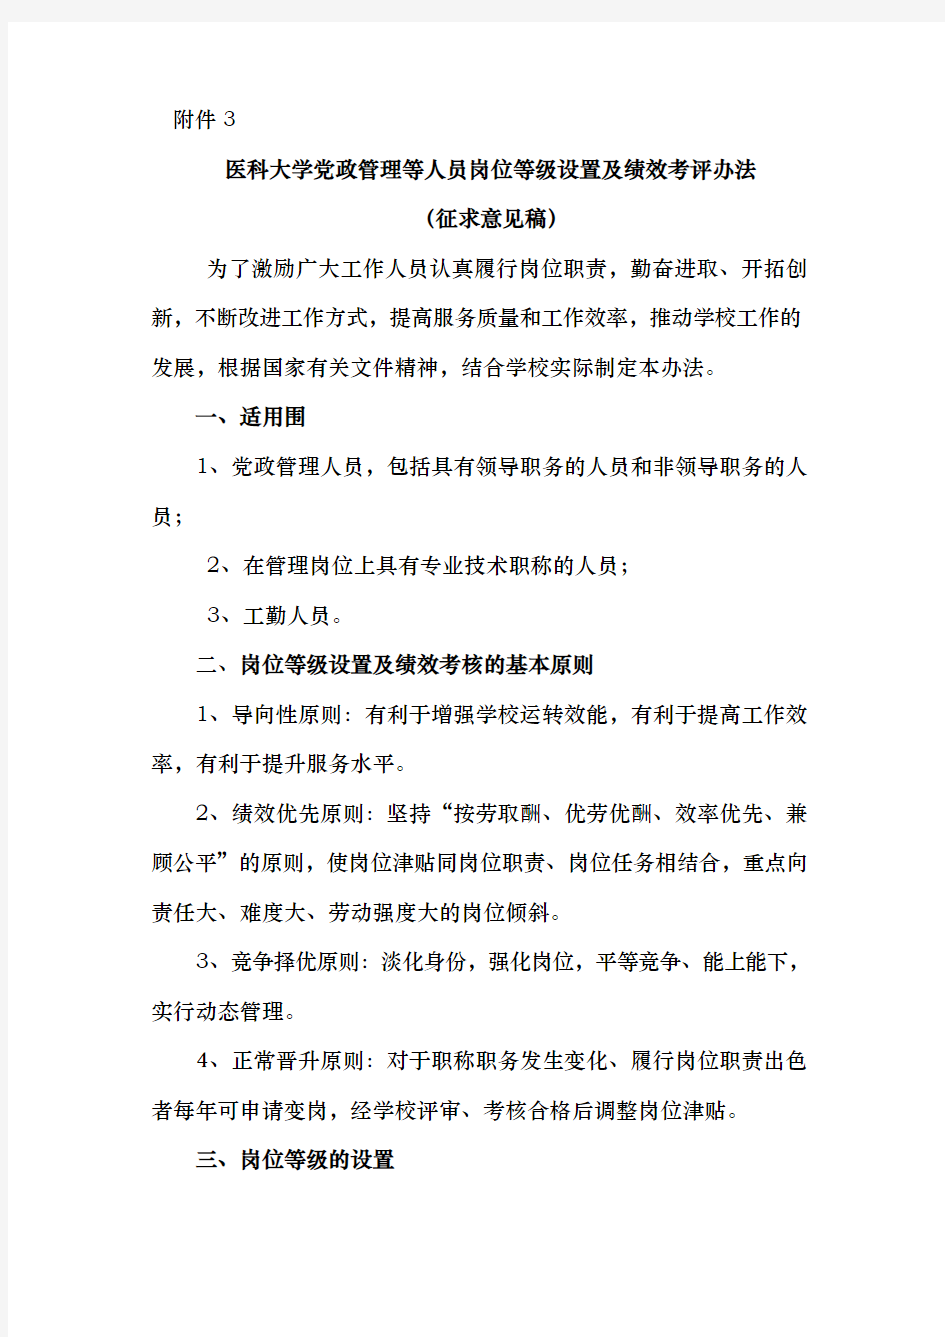 重庆医科大学党政管理等人员岗位等级设置与绩效考评办